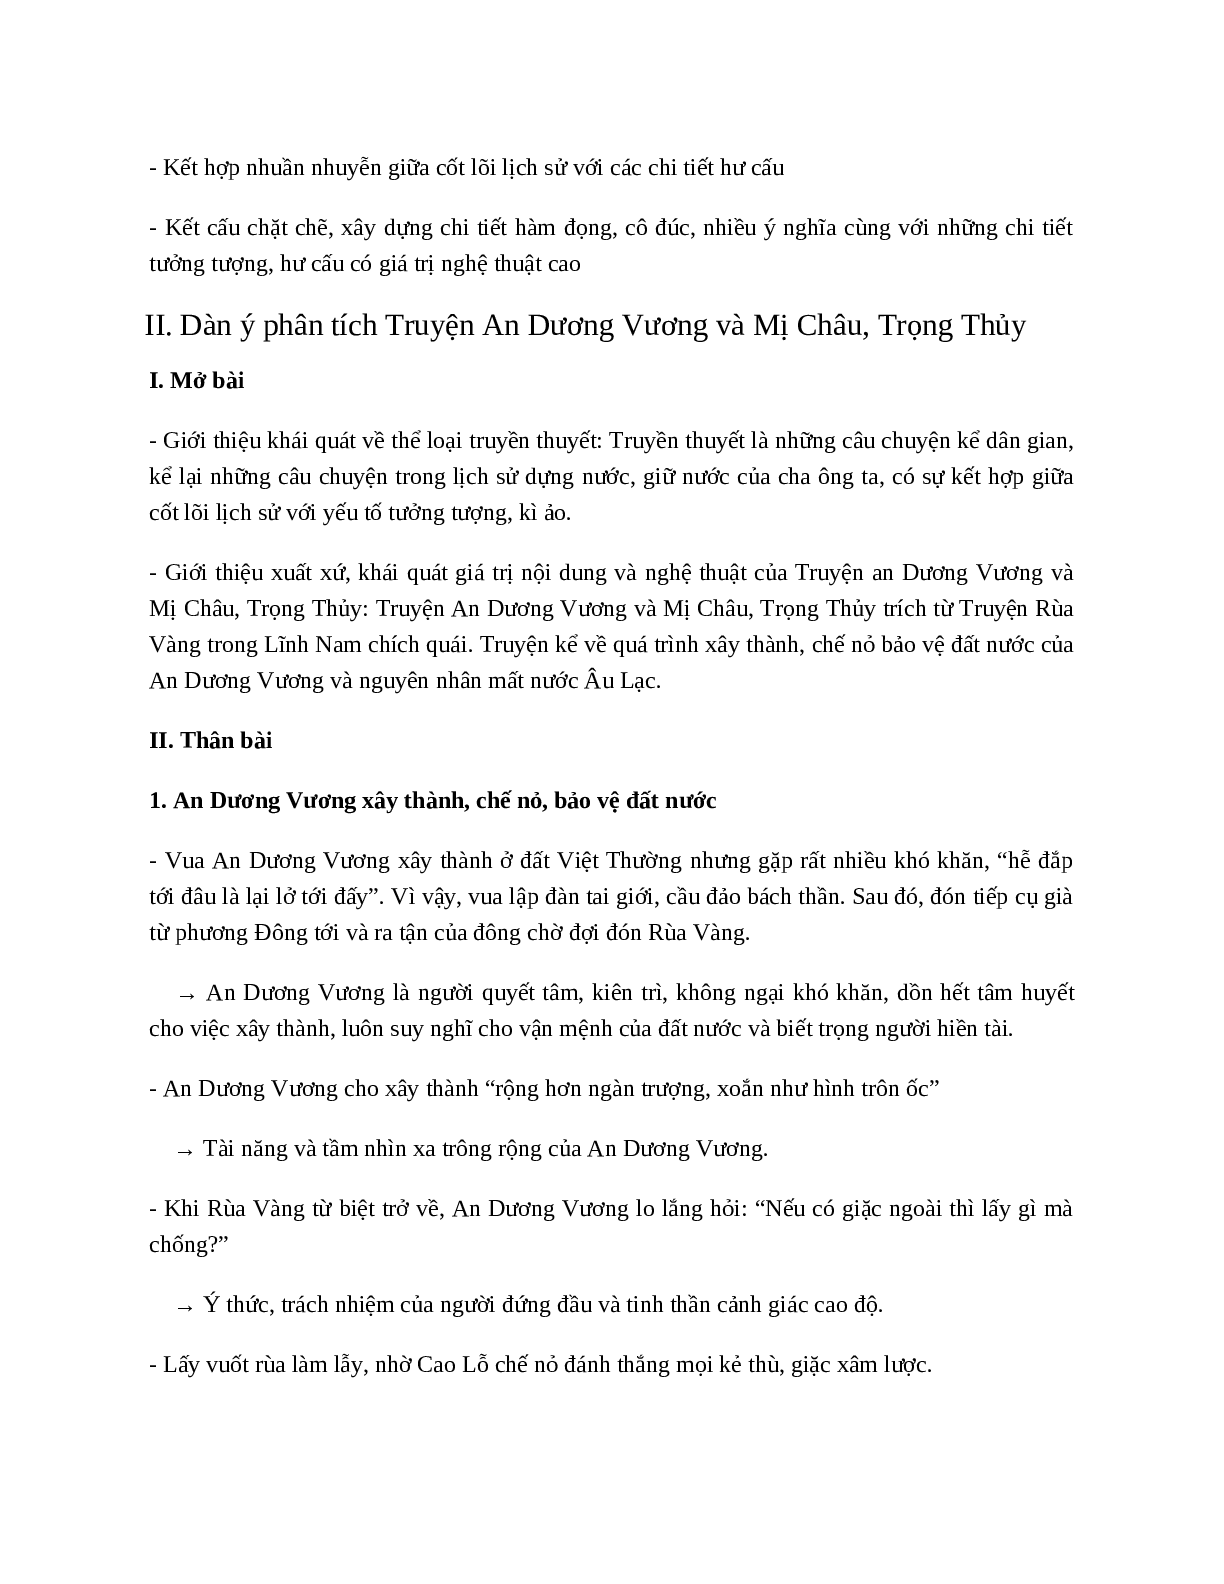 Truyện An Dương Vương và Mị Châu, Trọng Thủy - nội dung, dàn ý phân tích, bố cục, tóm tắt (trang 2)